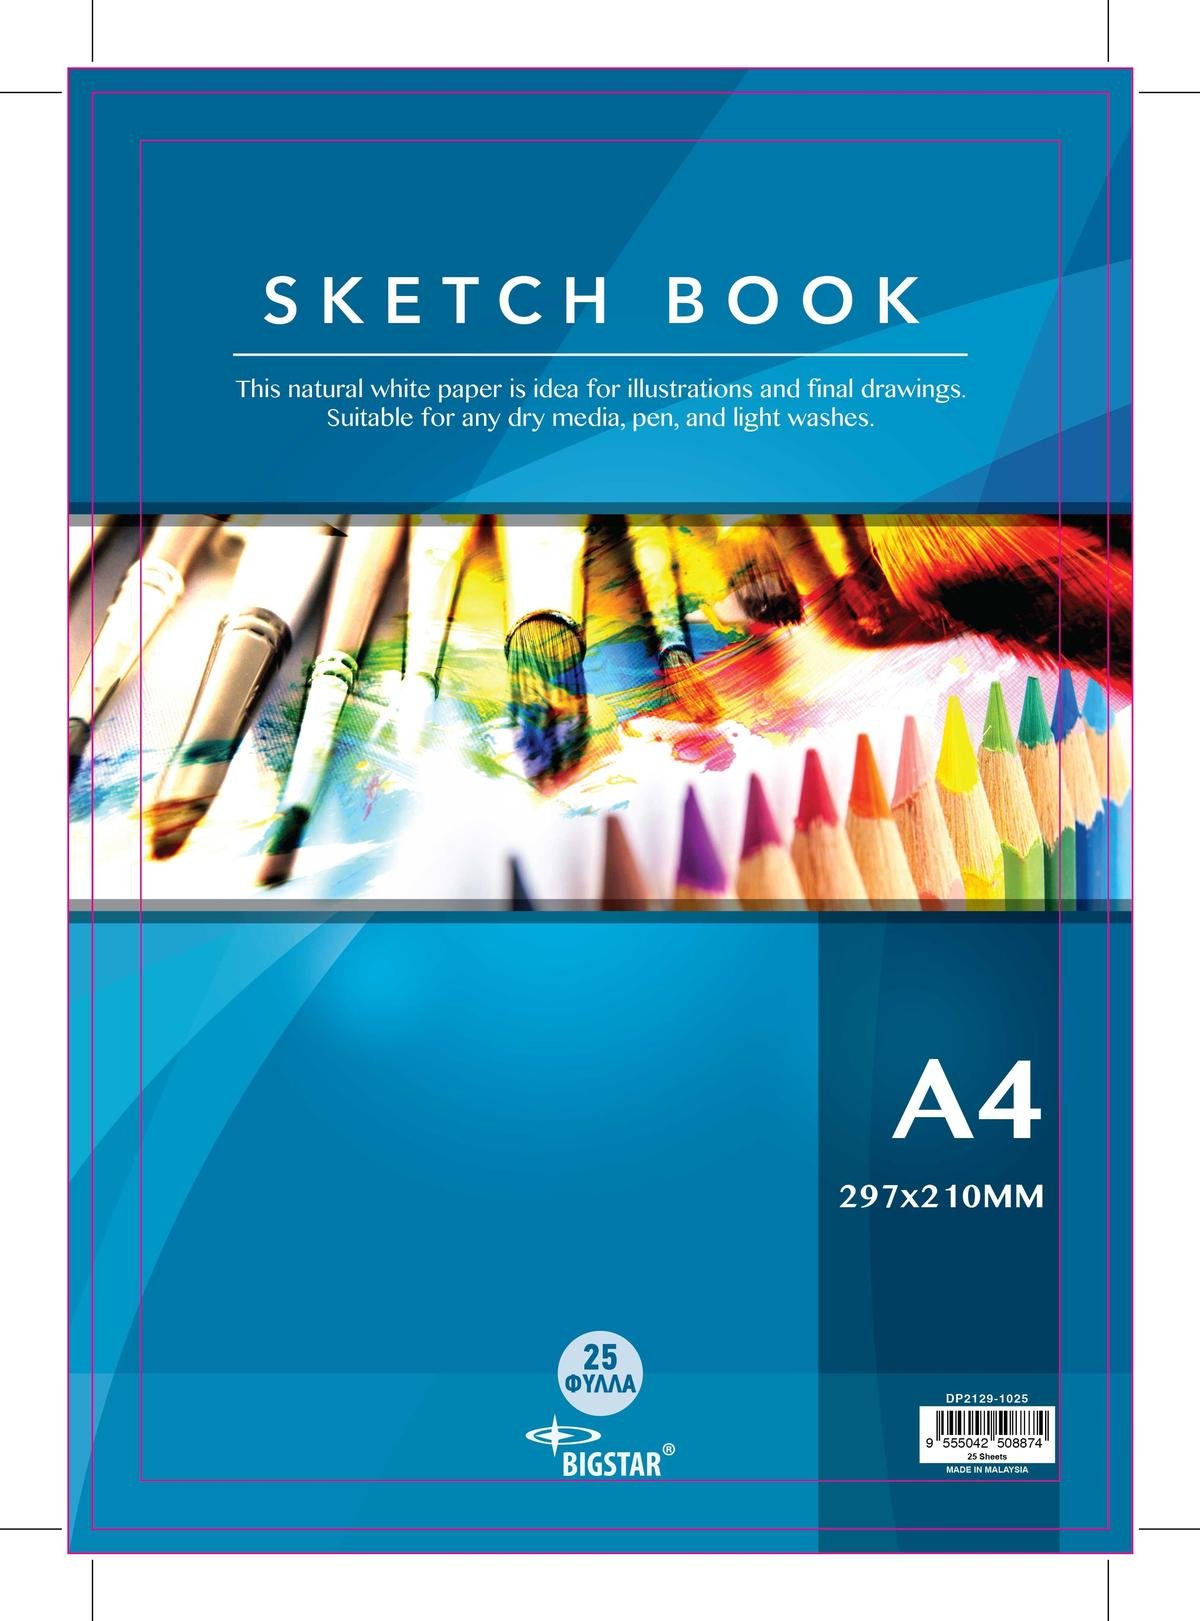 Sketch book A4